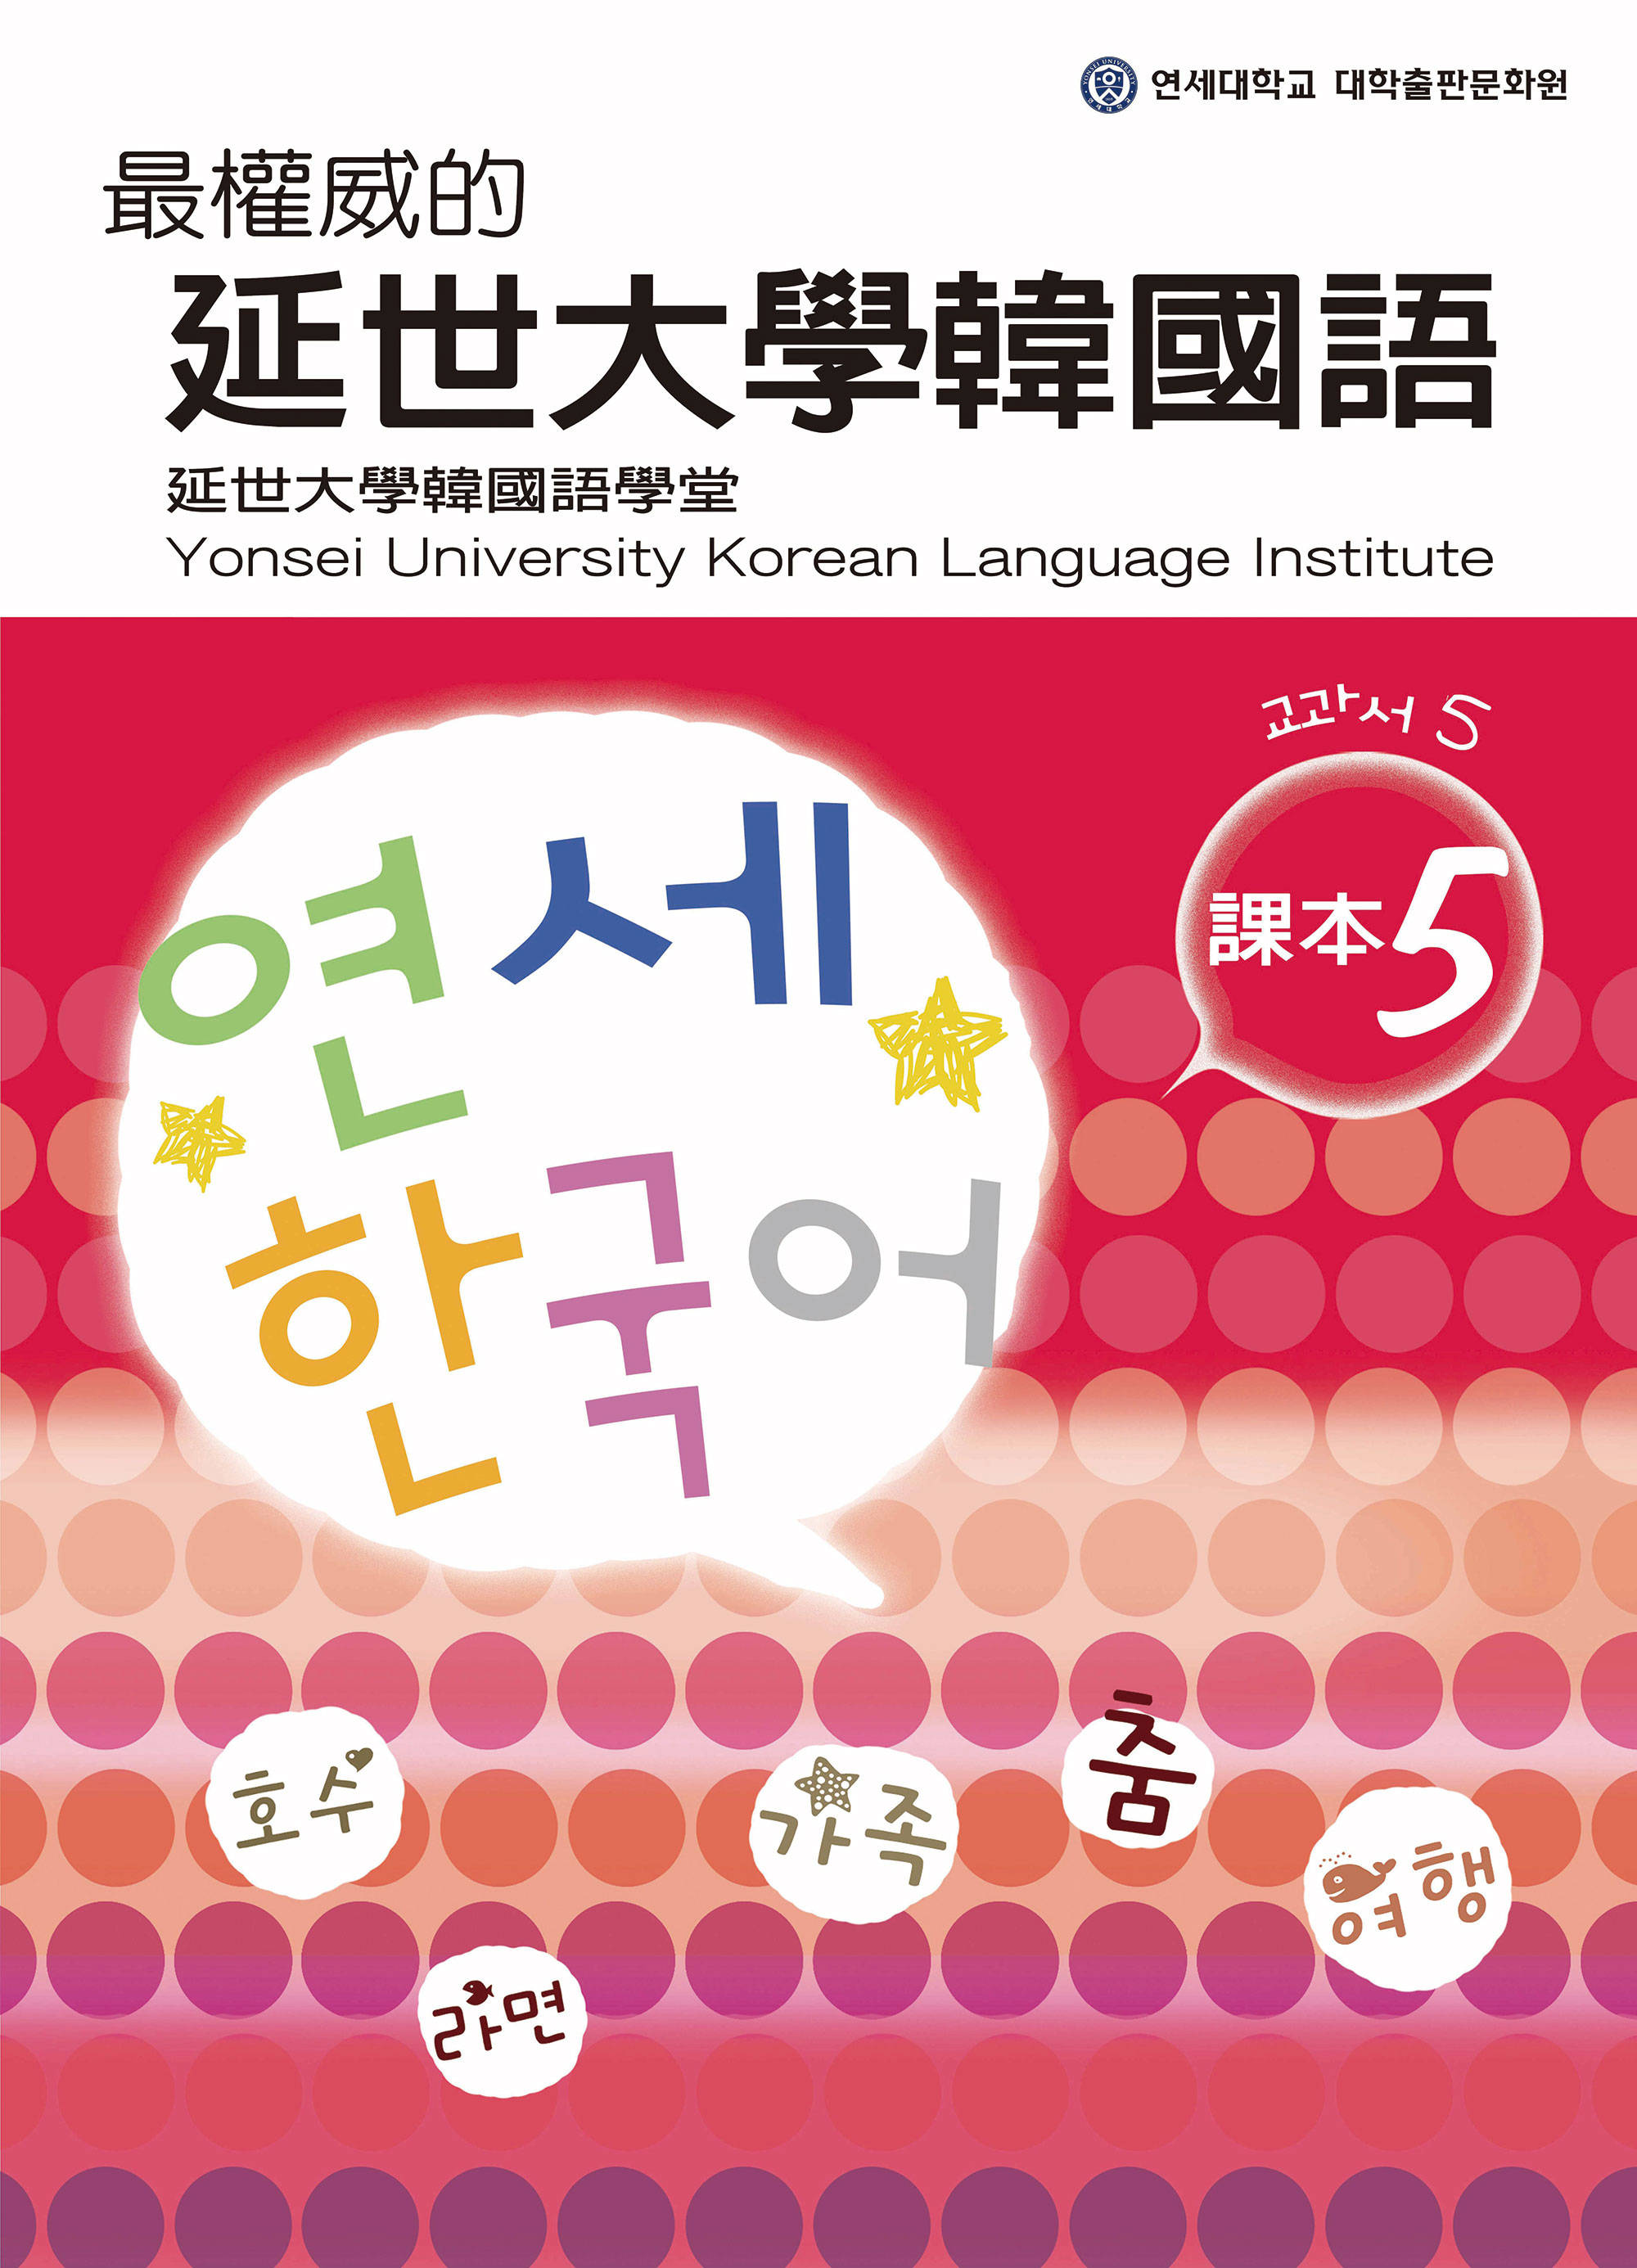 ►語言學習►暢銷書► 最權威的延世大學韓國語課本5(附MP3 光碟一片)